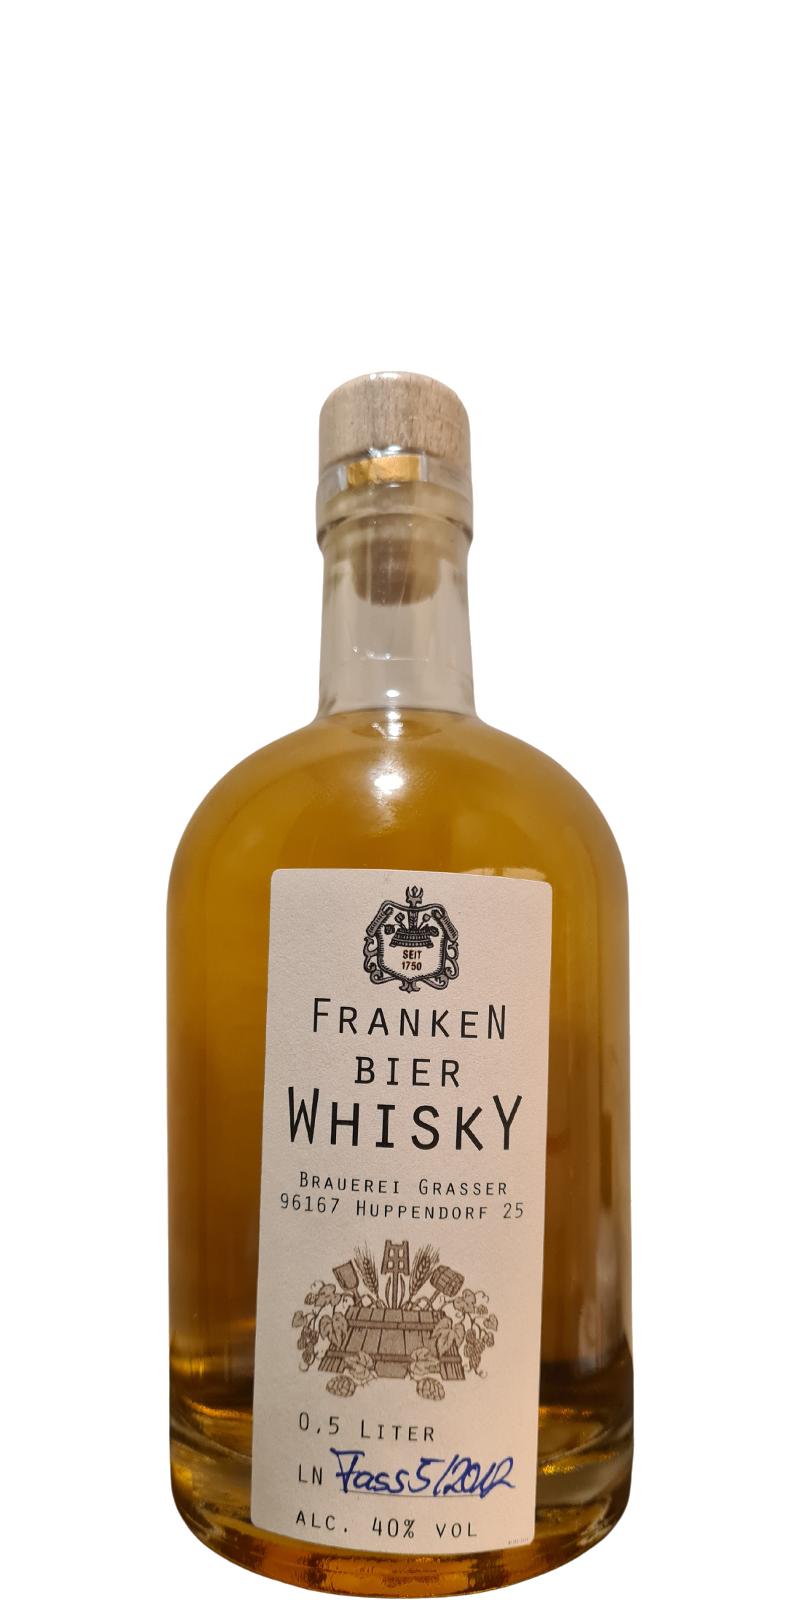 Brauerei Grasser Franken Bier Whisky